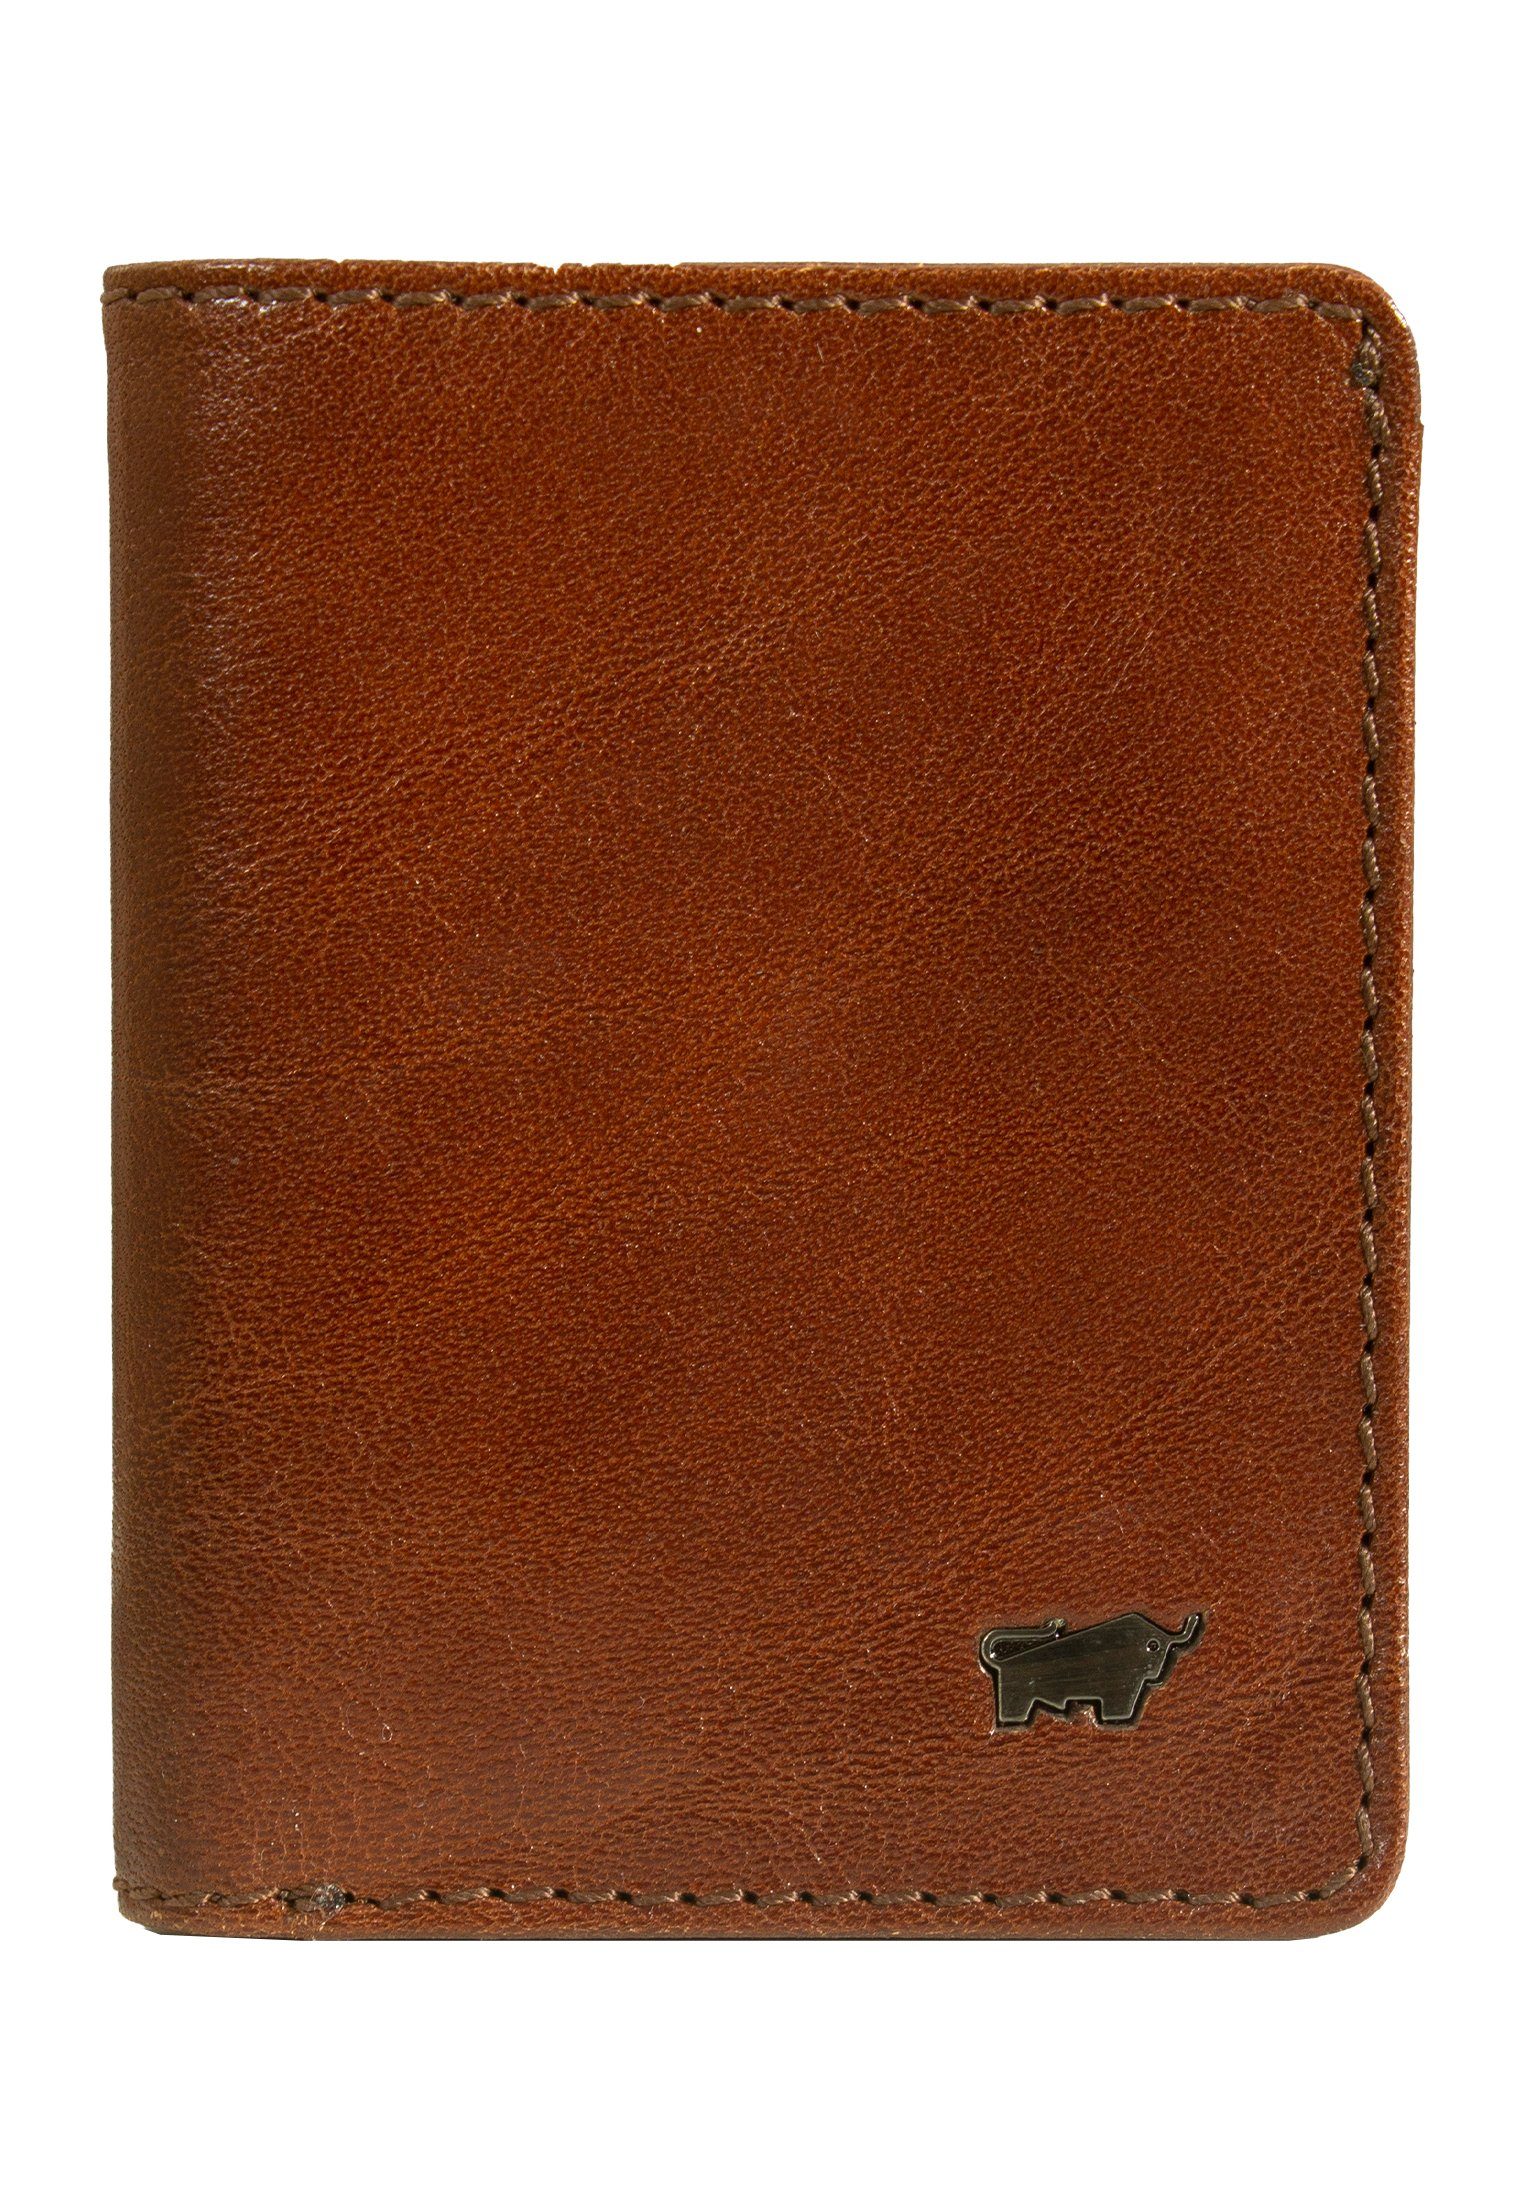 S, palisandro Geldbörse Geldbörse mit RFID Münzfach Braun Büffel COUNTRY